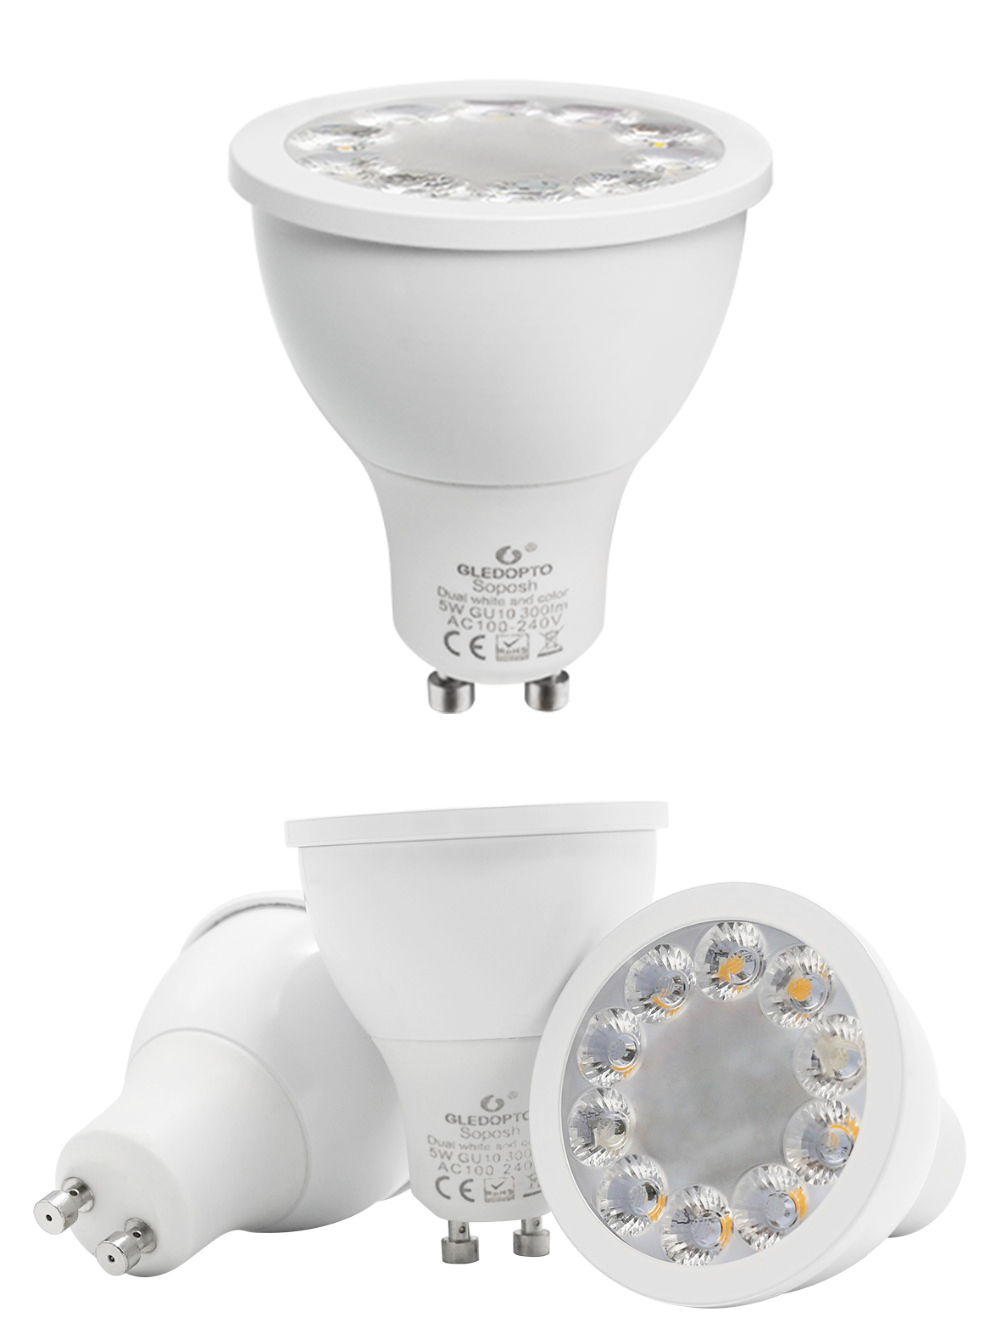 GLEDOPTO-GL-S-003Z-AC110-240V-ZIGBEE-ZLL-RGBW-GU10-5W-LED-Spotlight-Bulb-Work-with-Amazon-Echo-Plus-1477503-6